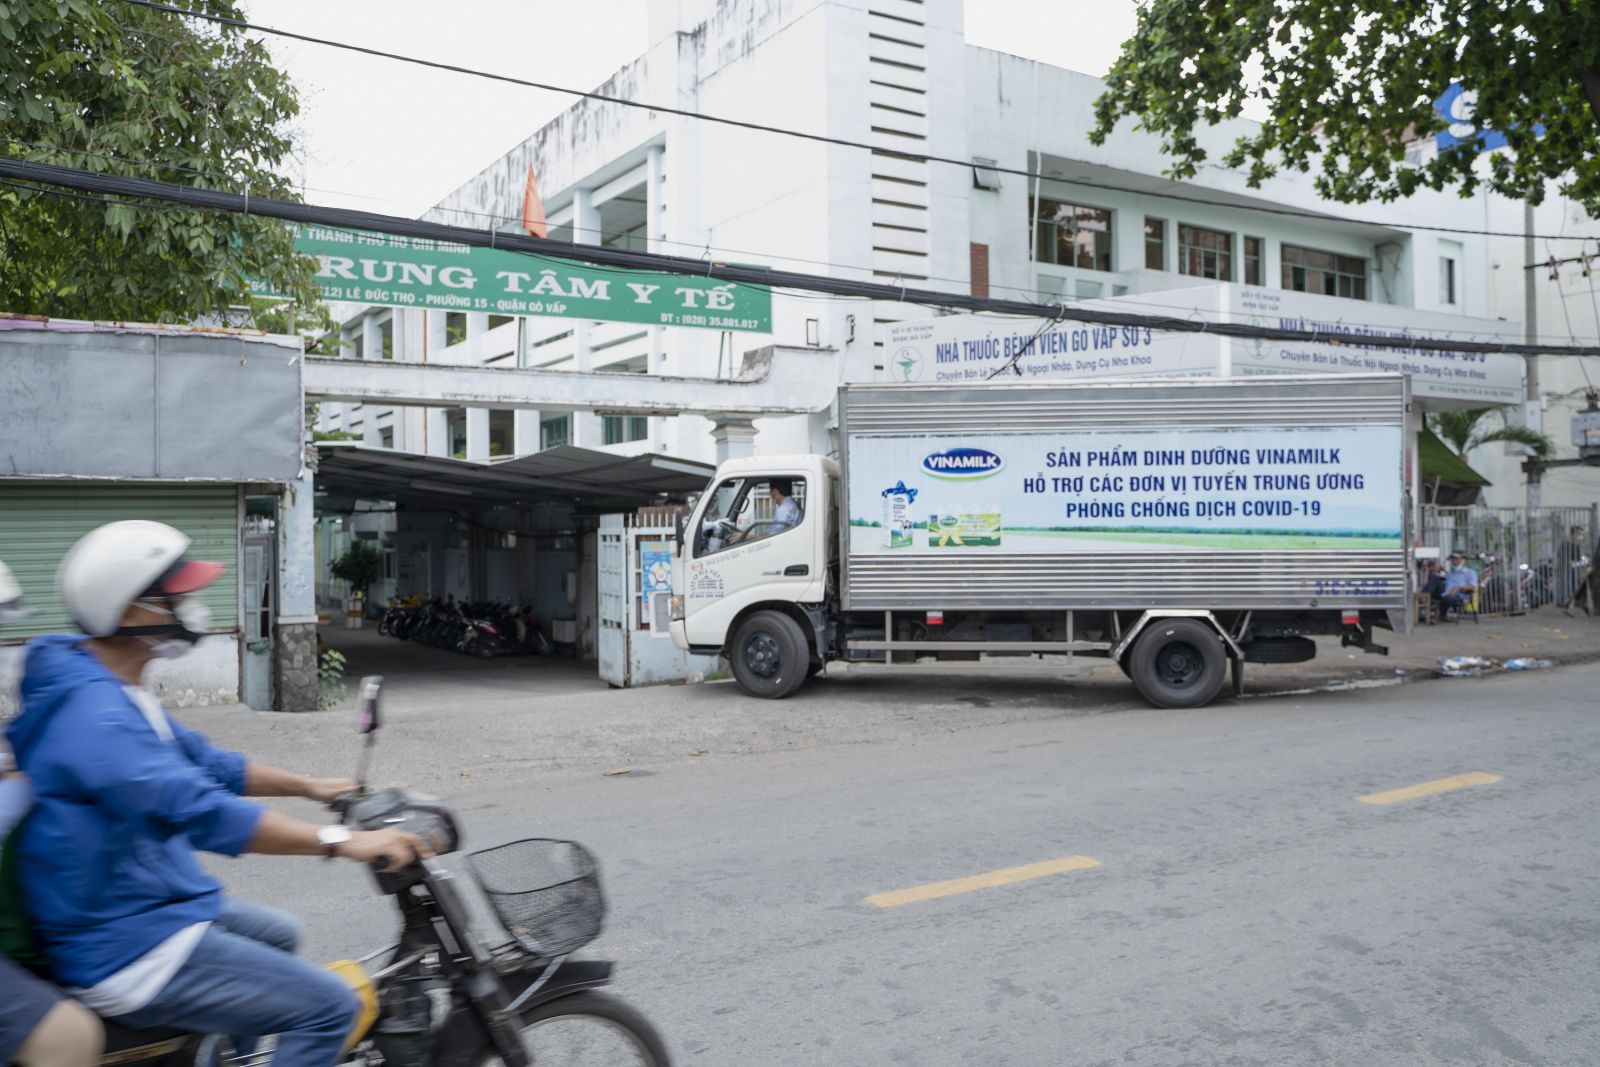 Sáng sớm ngày 1-6, các chuyến xe của Vinamilk đã rời kho, lên đường đến nhiều điểm tiếp nhận hỗ trợ tại các bệnh viện tuyến đầu và Trung tâm y tế quận Gò Vấp tại TP.HCM